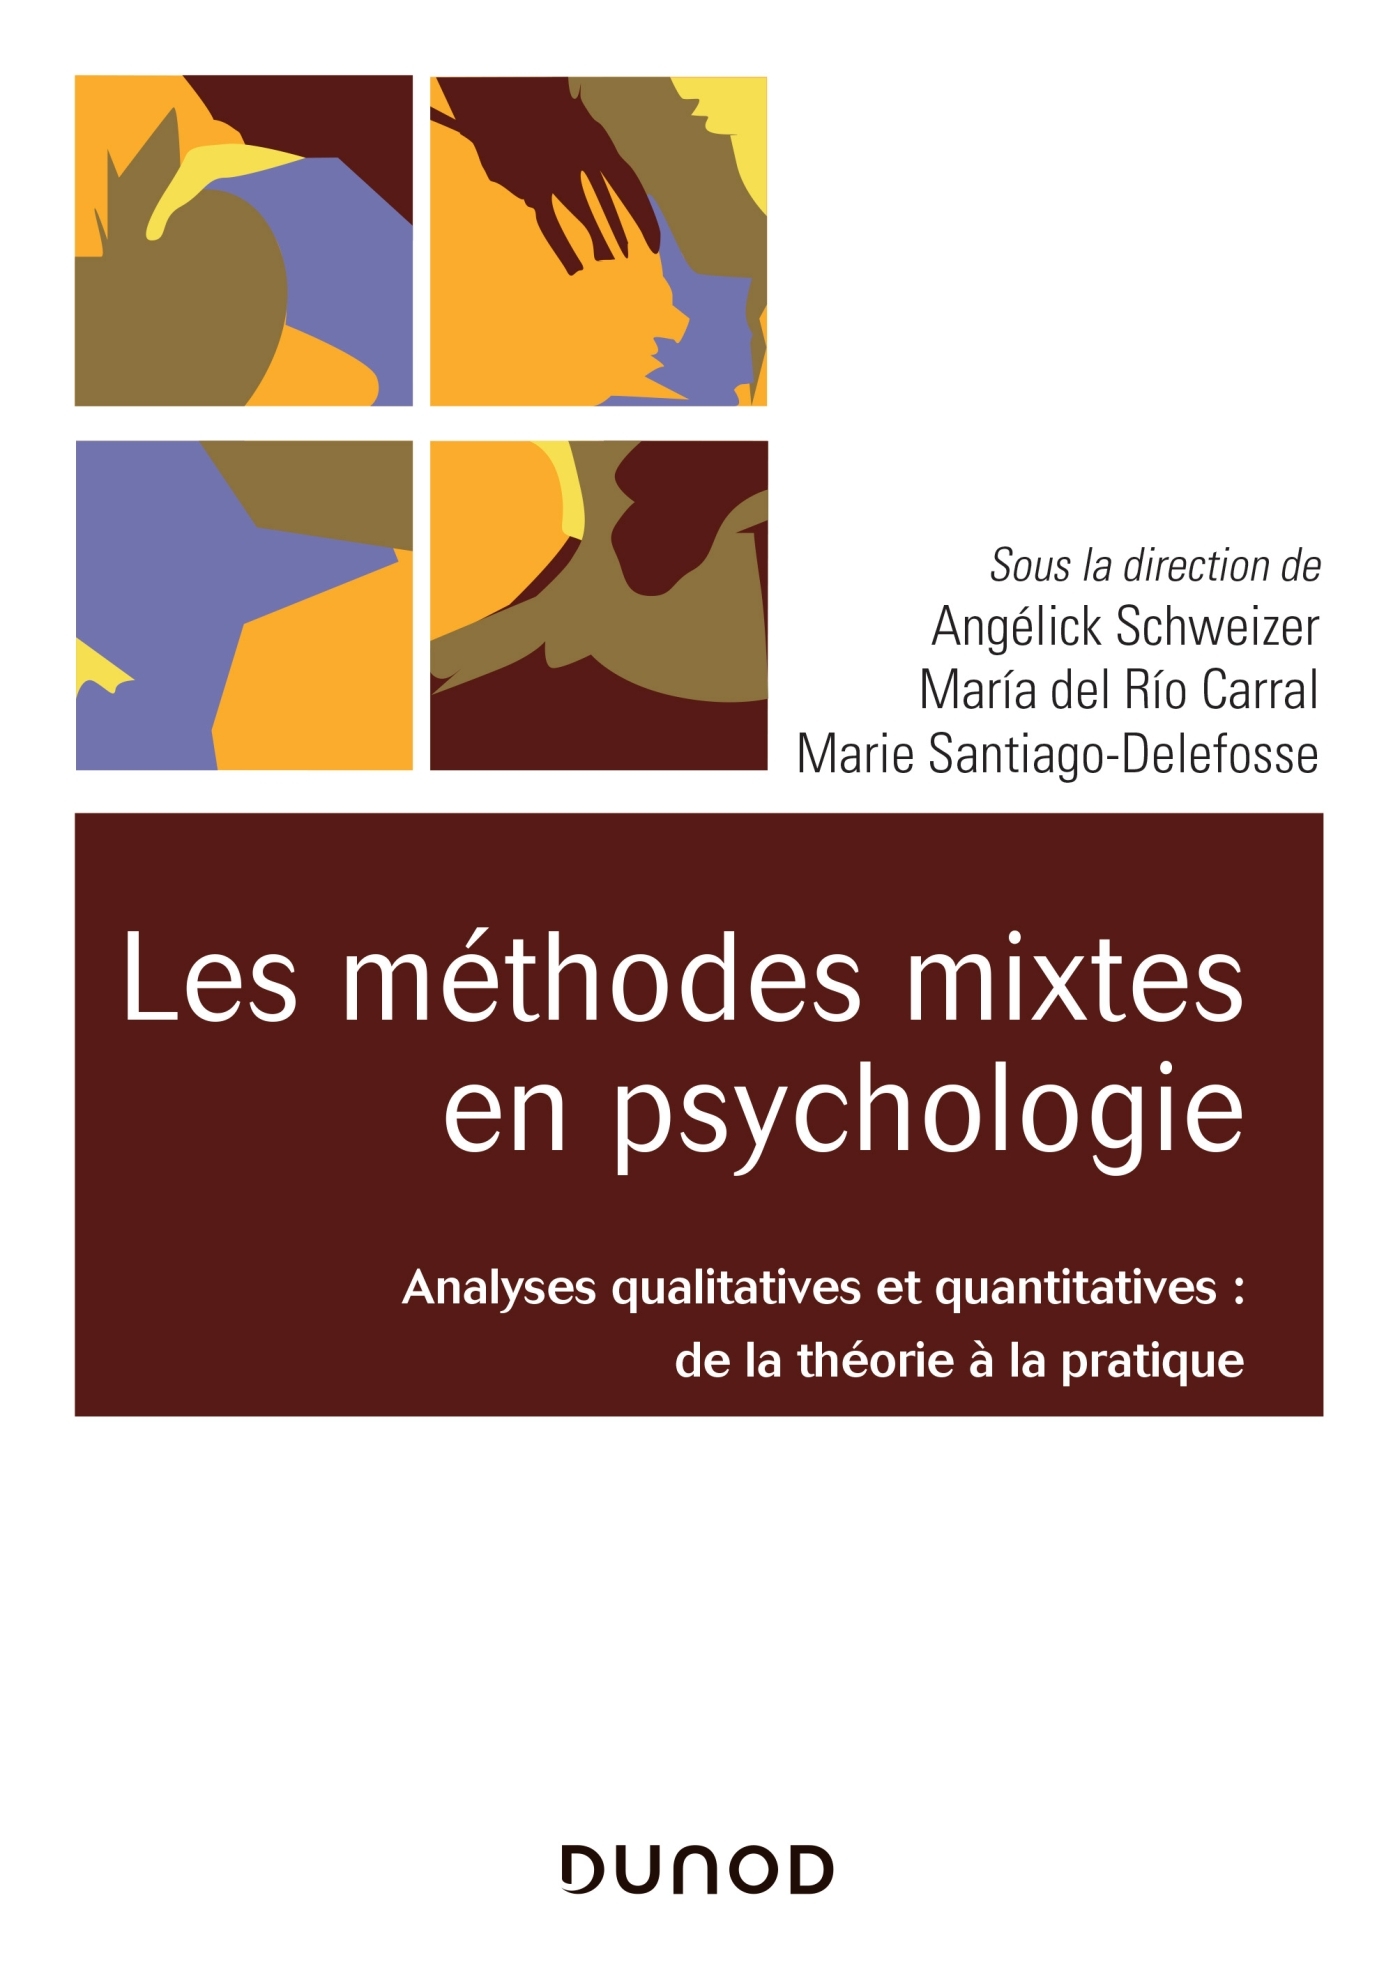 Les méthodes mixtes en psychologie - Analyses qualitatives et quantitatives, De la théorie à la pratique (9782100793020-front-cover)